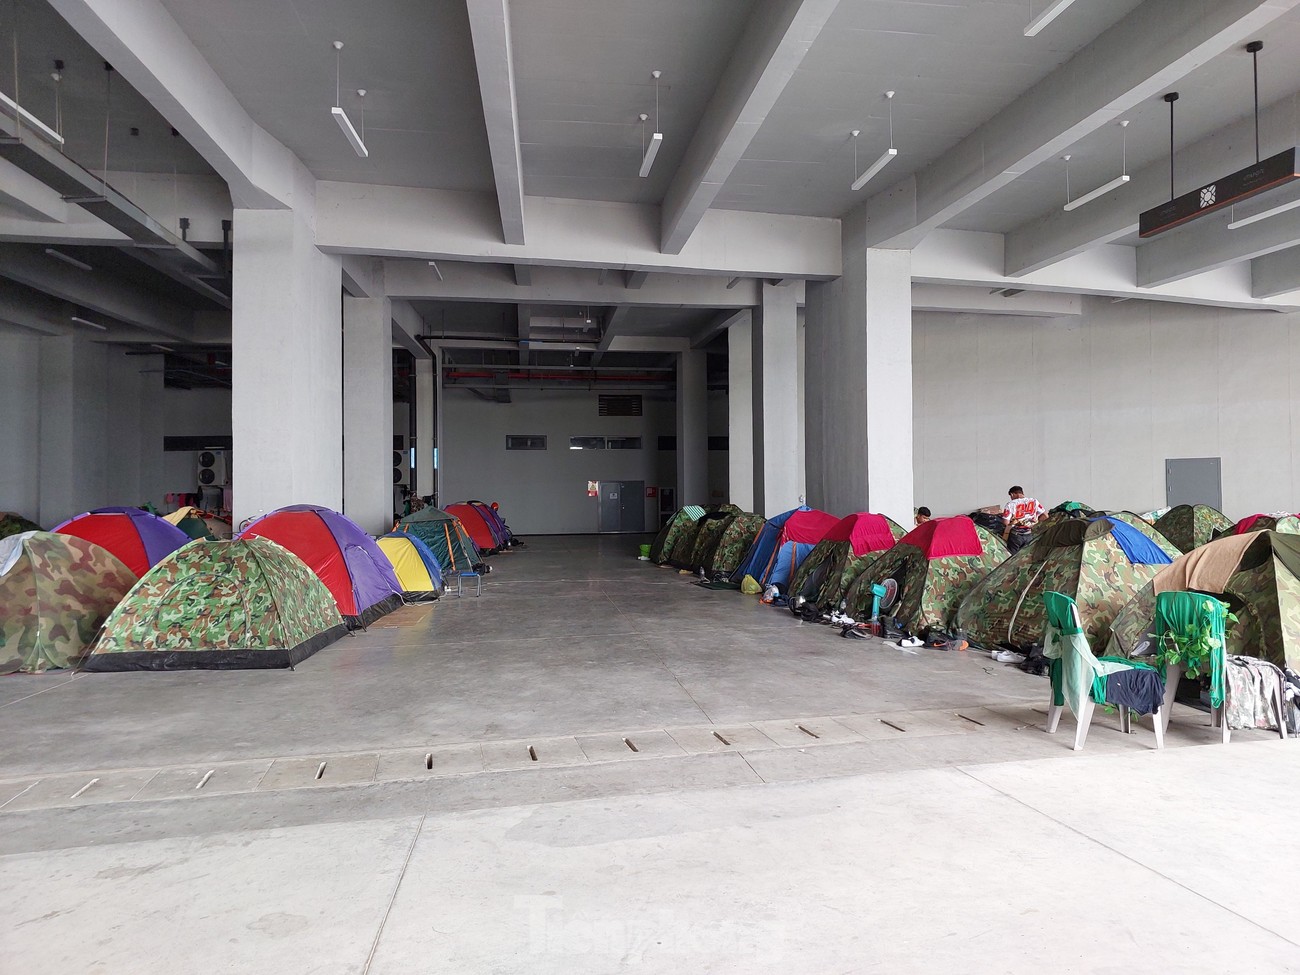 Bí mật những căn lều tạm đang nỗ lực tạo ra Lễ khai mạc SEA Games tầm cỡ Olympic của Campuchia ảnh 4